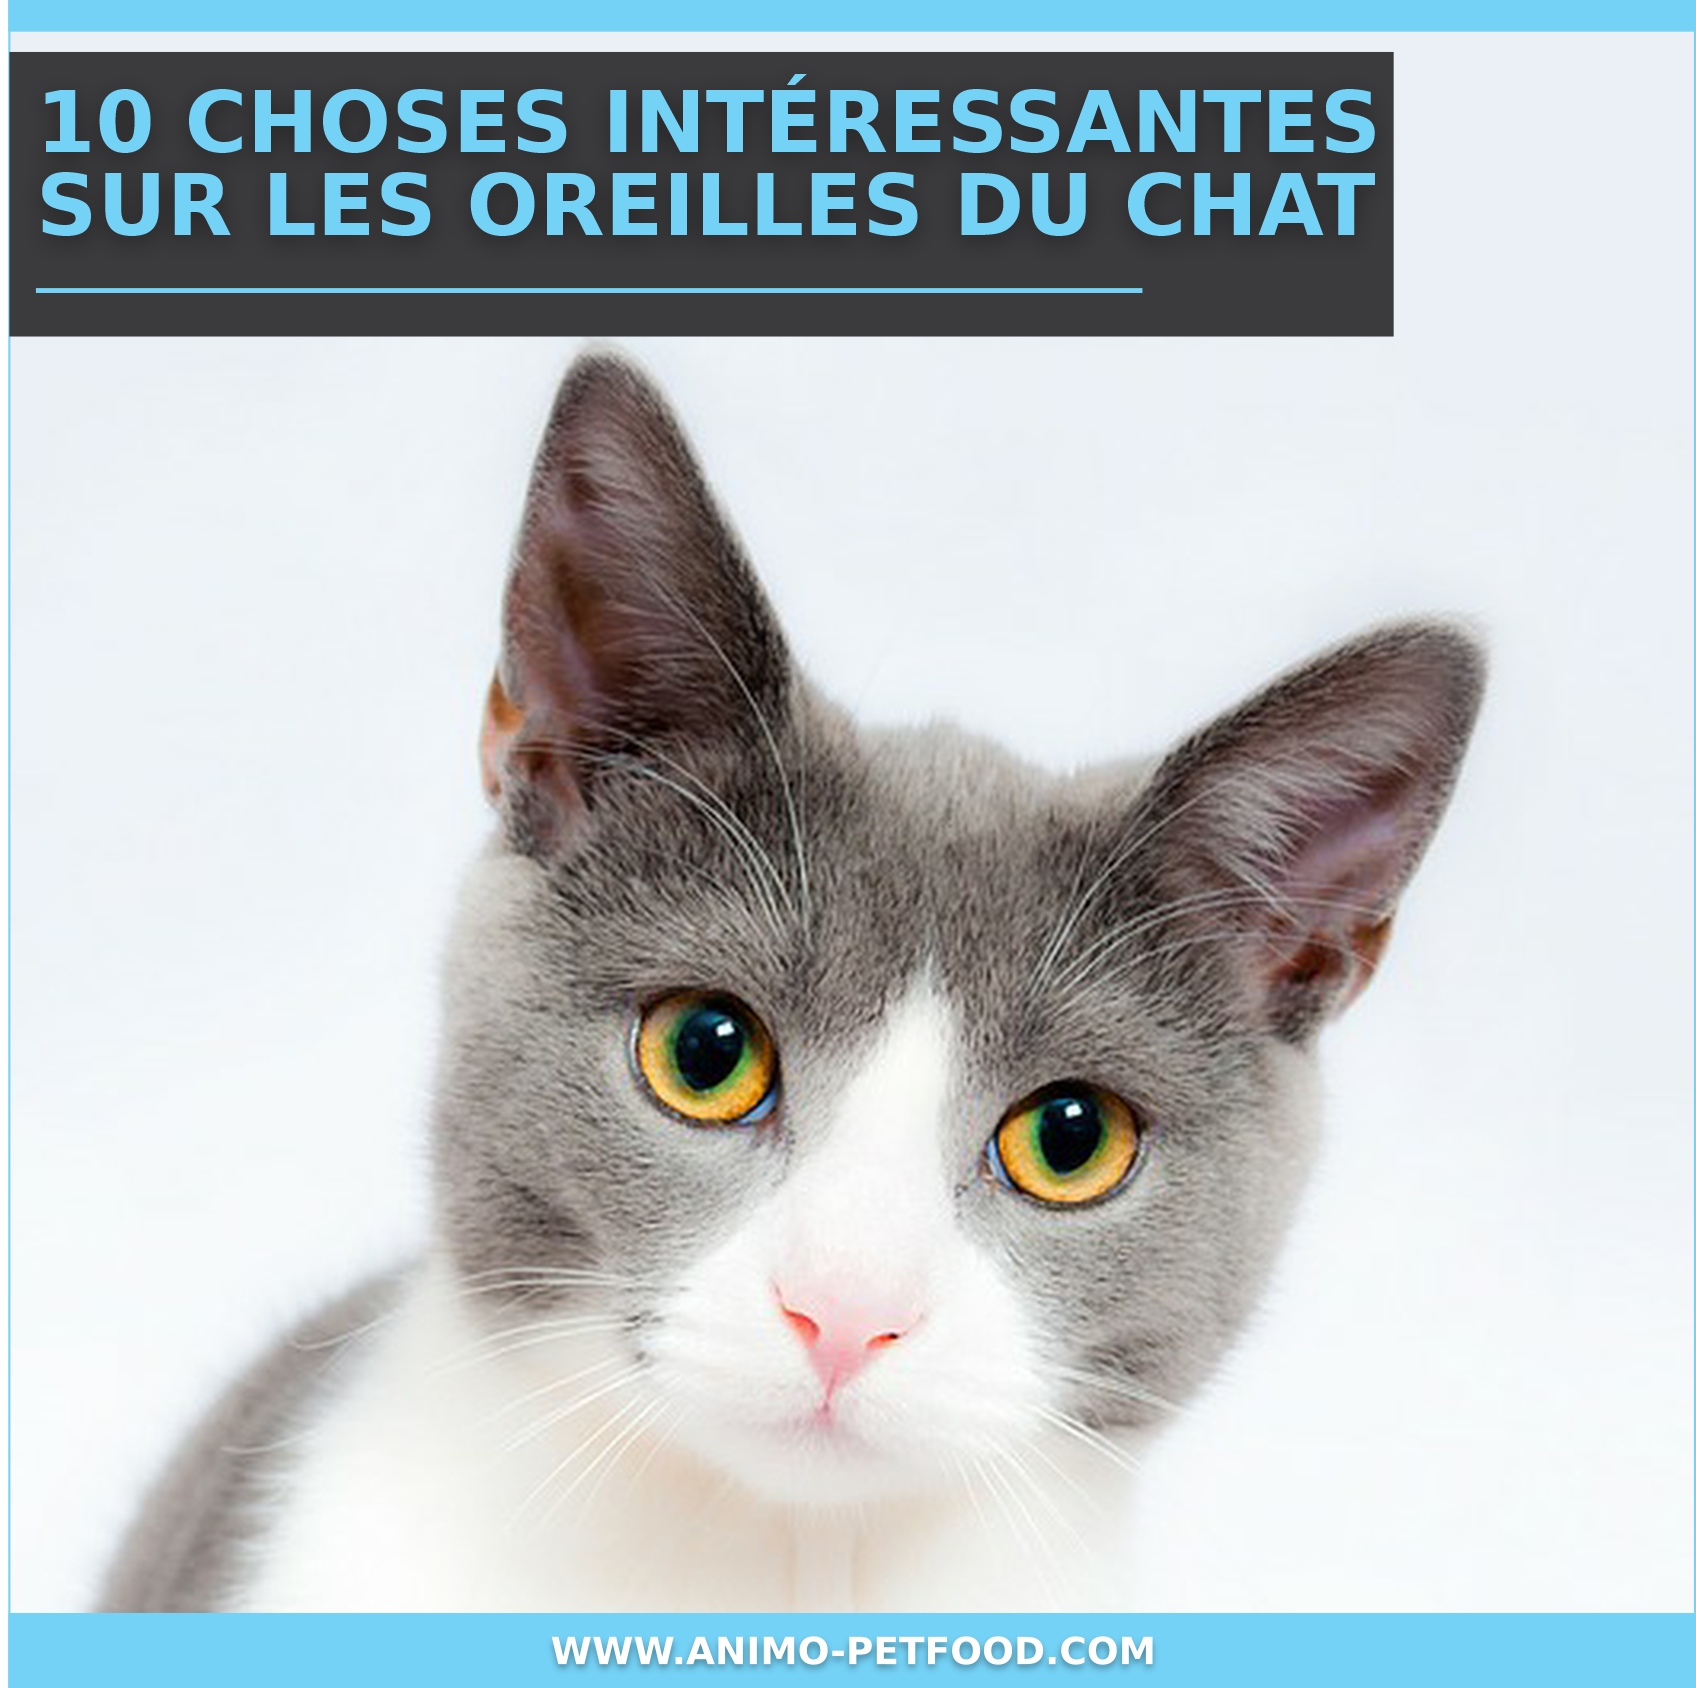 10 Choses Interessantes Sur Les Oreilles Du Chat